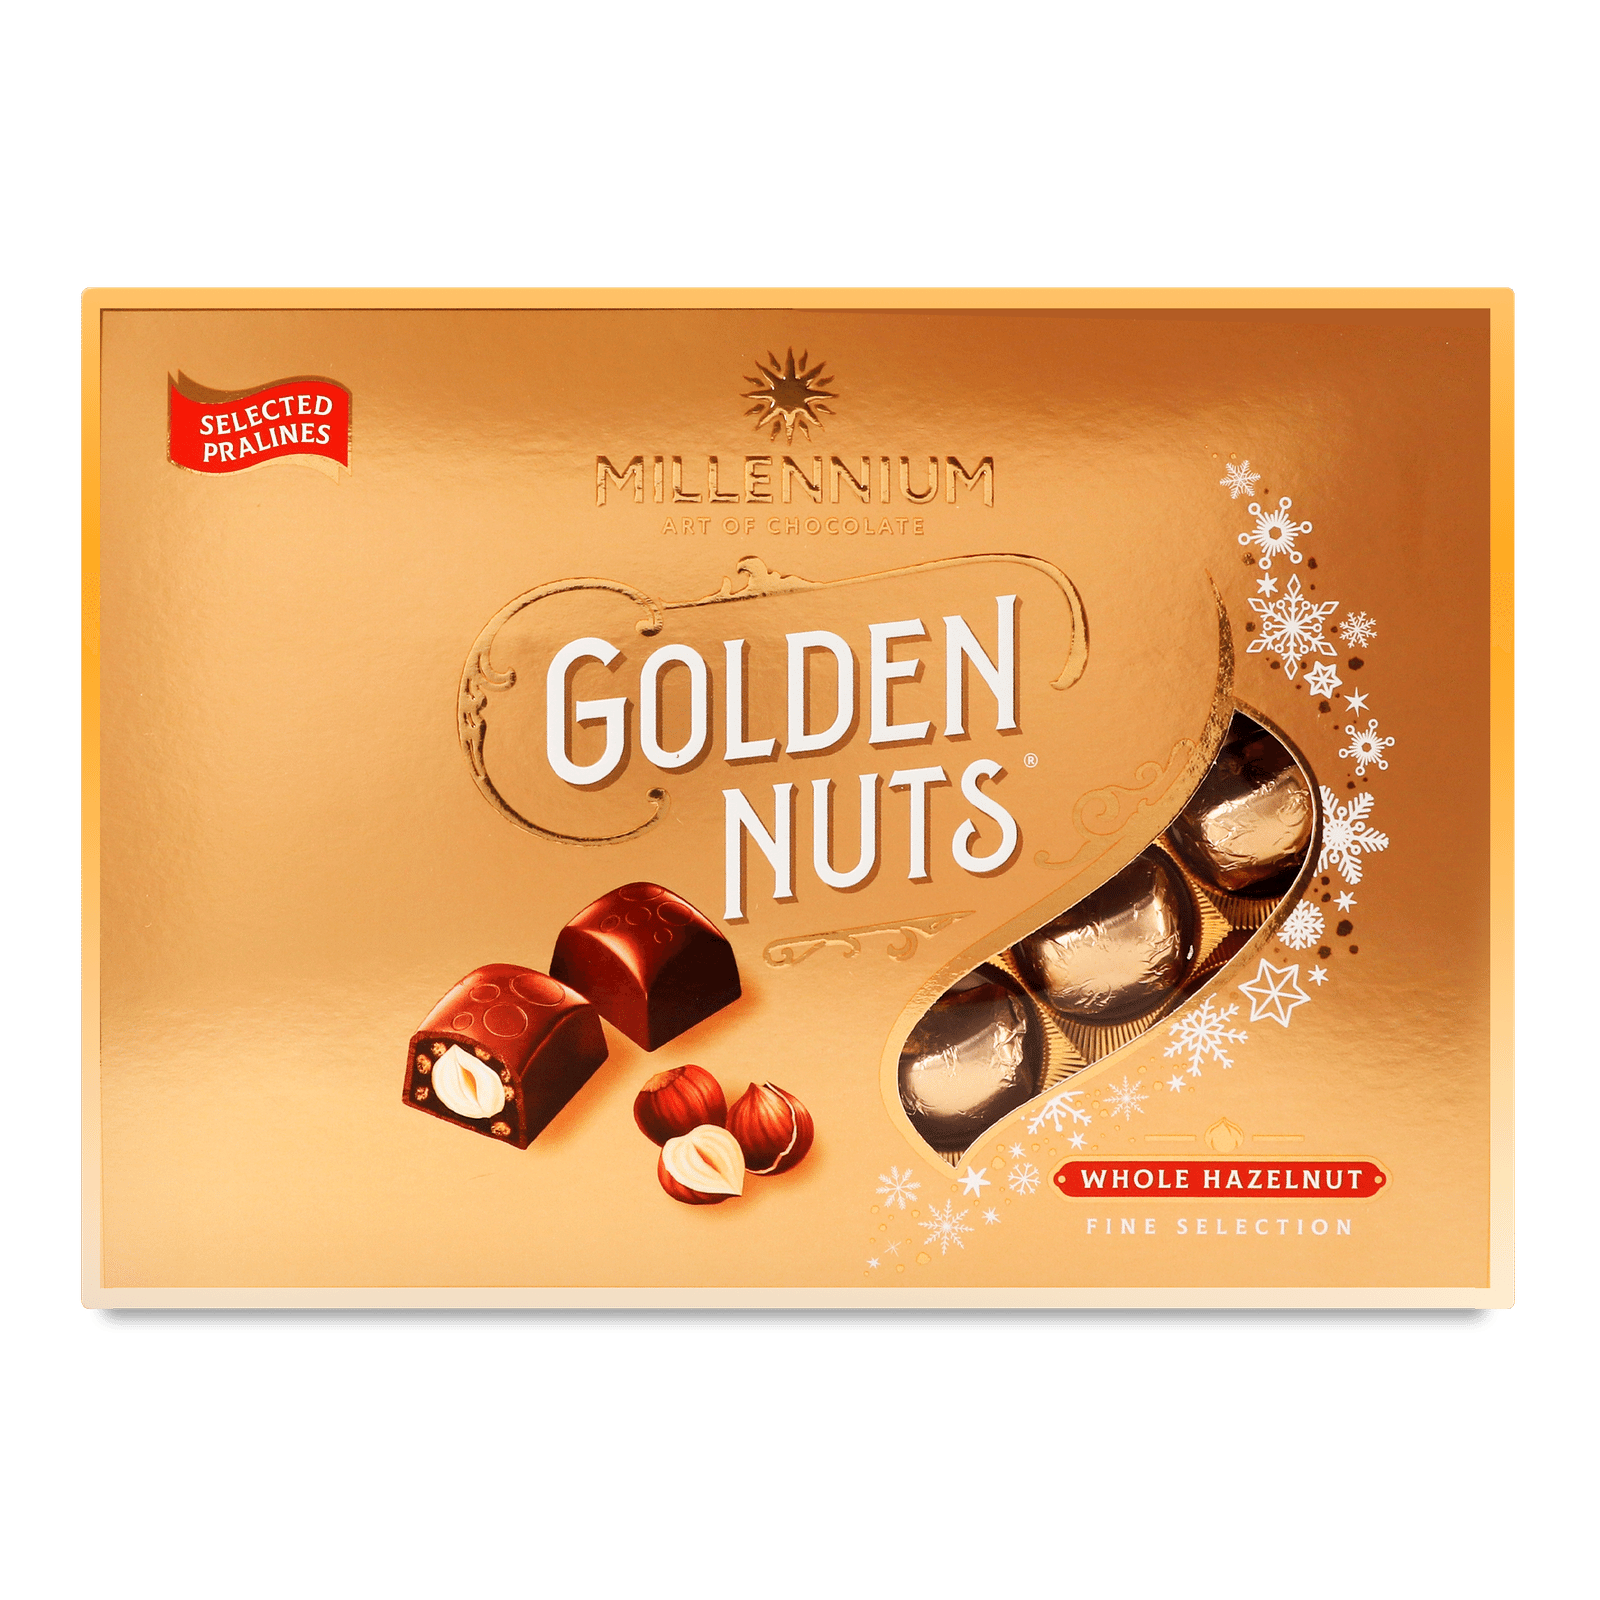 Цукерки  Millennium Golden Nuts з цілими лісовими горіхами - 1